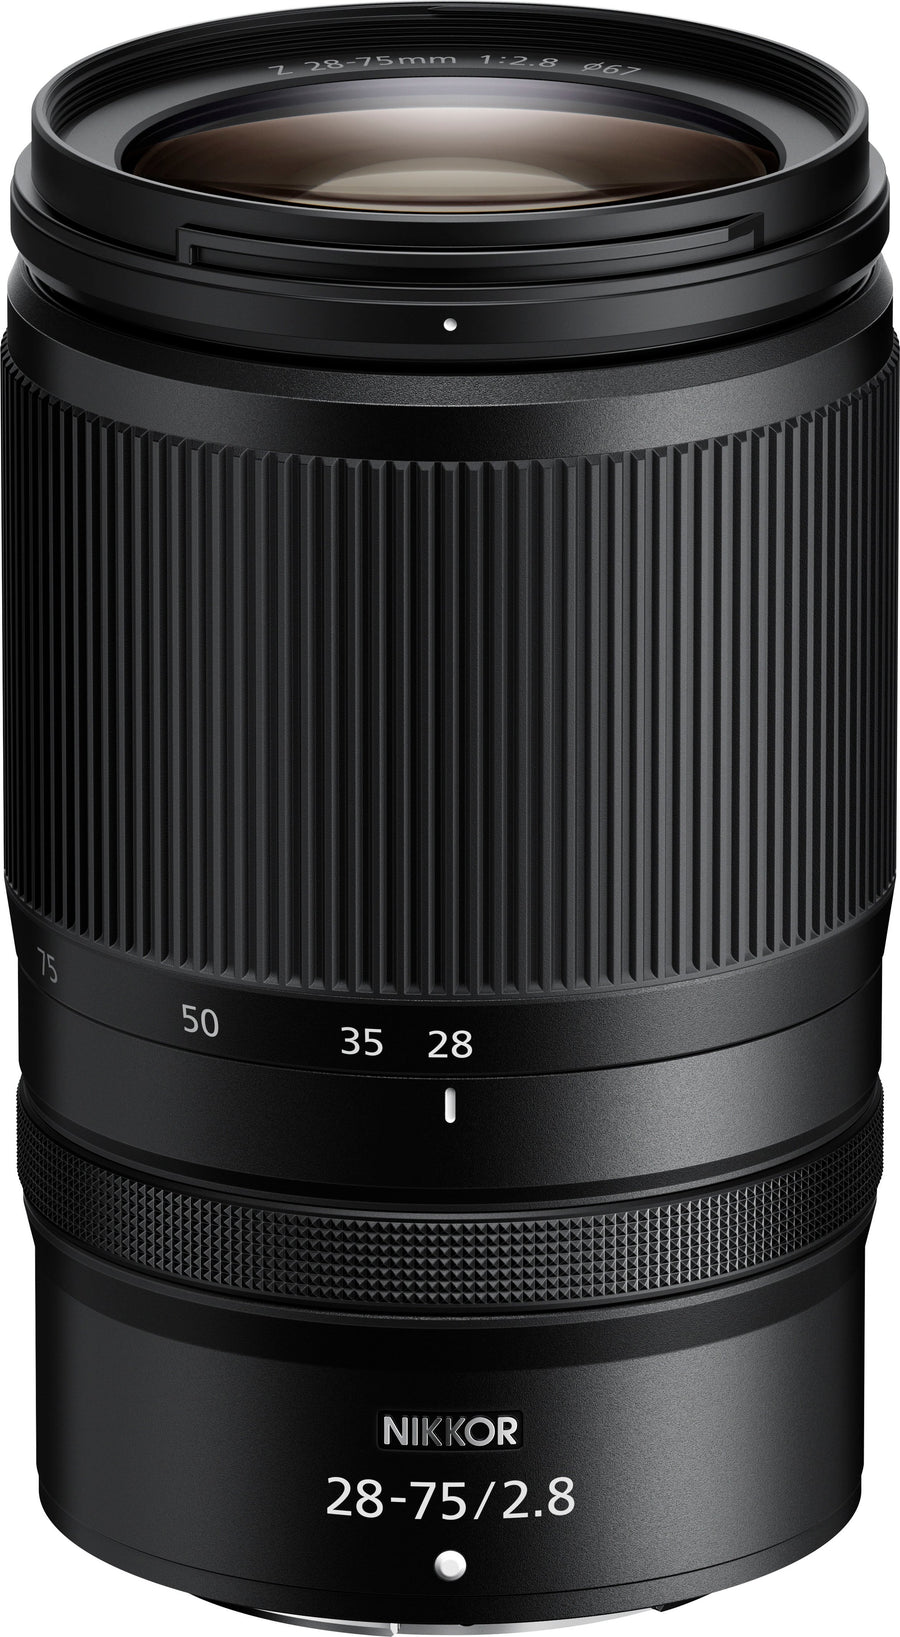 NIKKOR Z 28-75mm f/2.8 Standard Zoom Lens for Nikon Z Cameras - Black_0